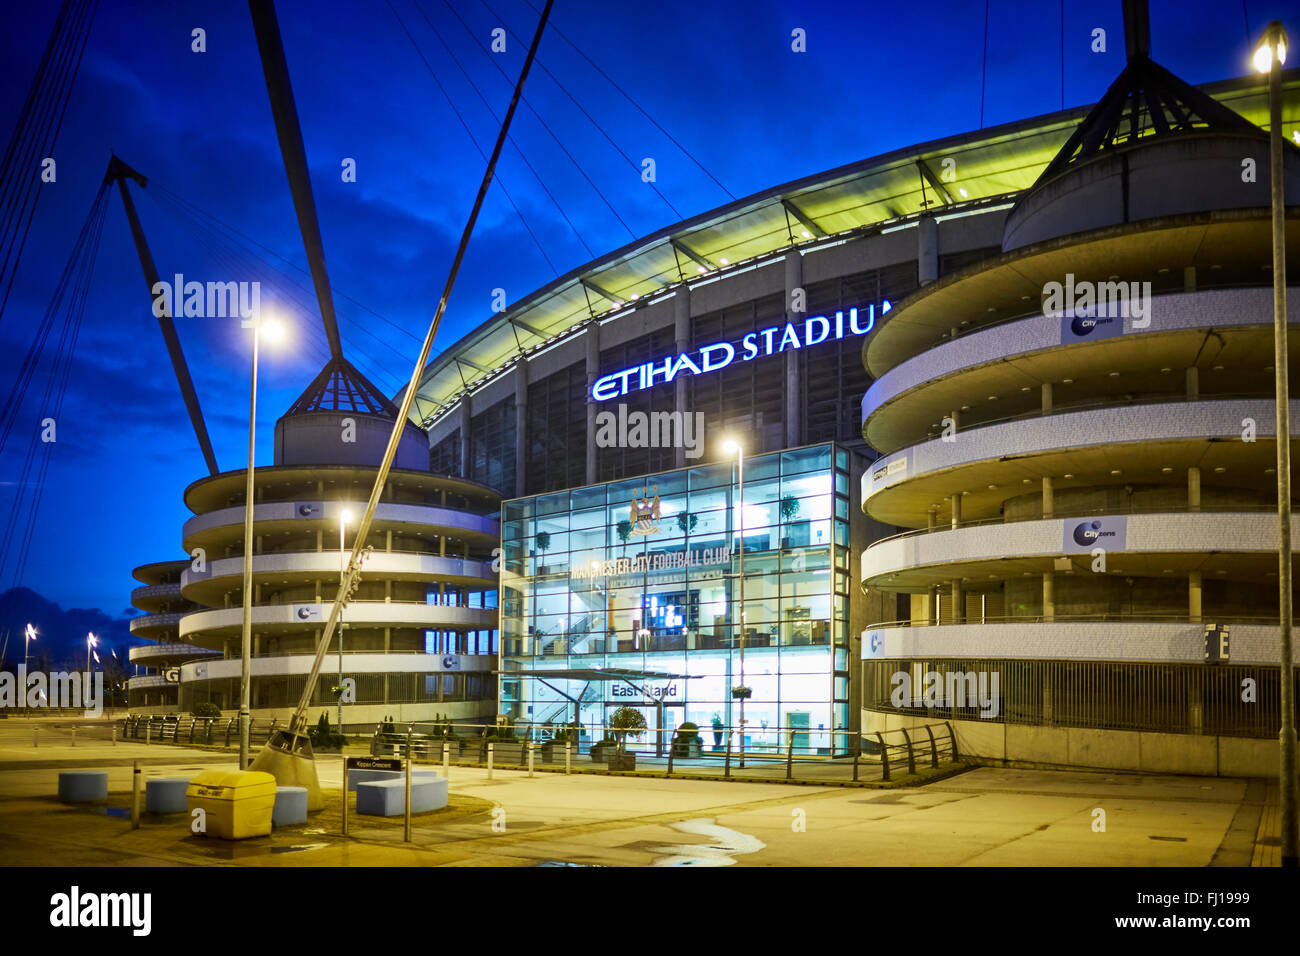 El City of Manchester Stadium de Manchester, Inglaterra, también conocido como Etihad Stadium por motivos de patrocinio, es la tierra natal Foto de stock